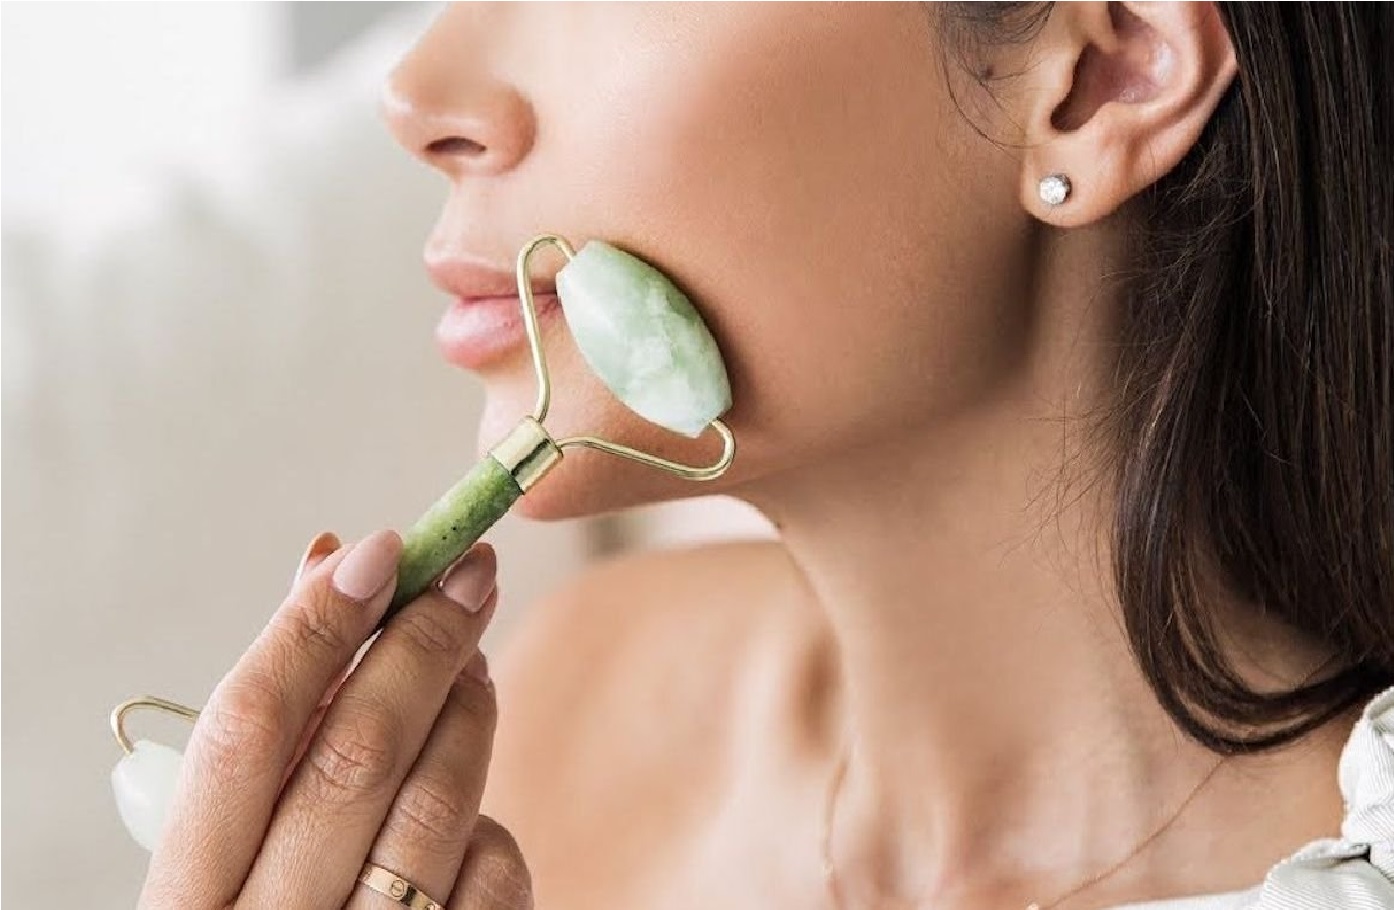 perderse evidencia He reconocido Rodillo de jade: Los beneficios del masaje terapéutico facial